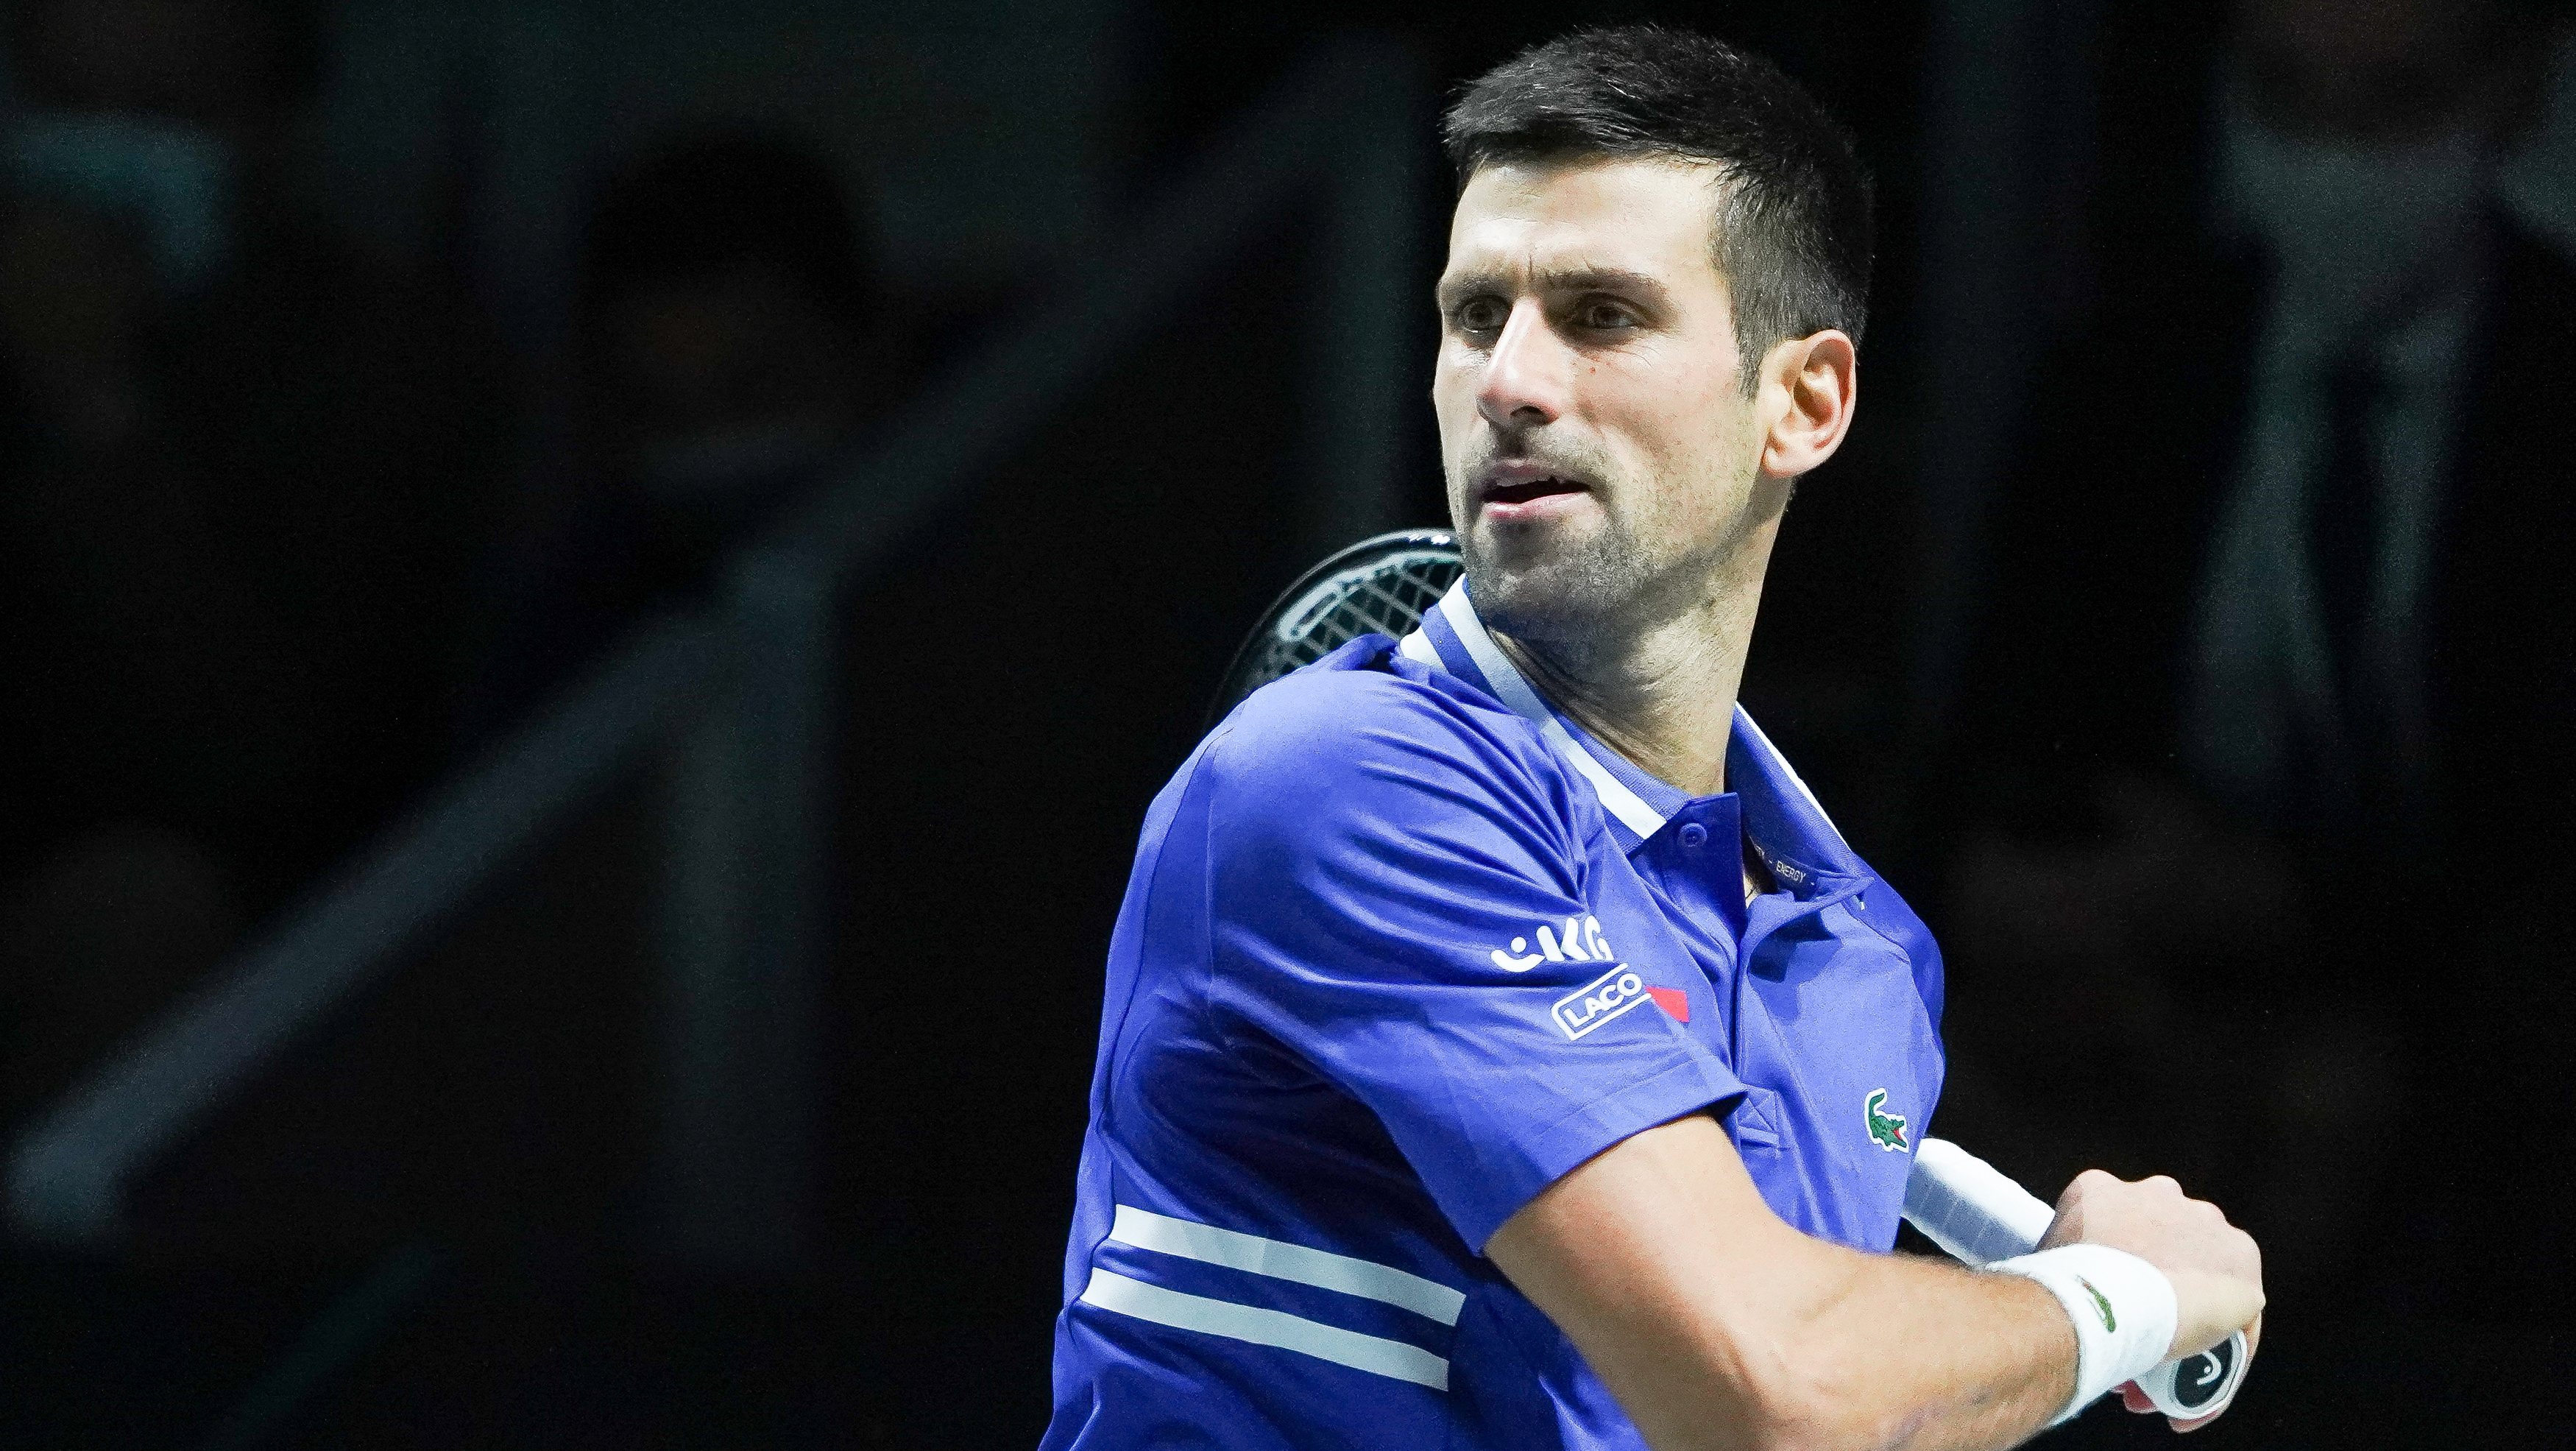 Caso jogue o Open da Austrália, Djokovic poderá tornar-se o jogador com mais vitórias em torneios do Grand Slam